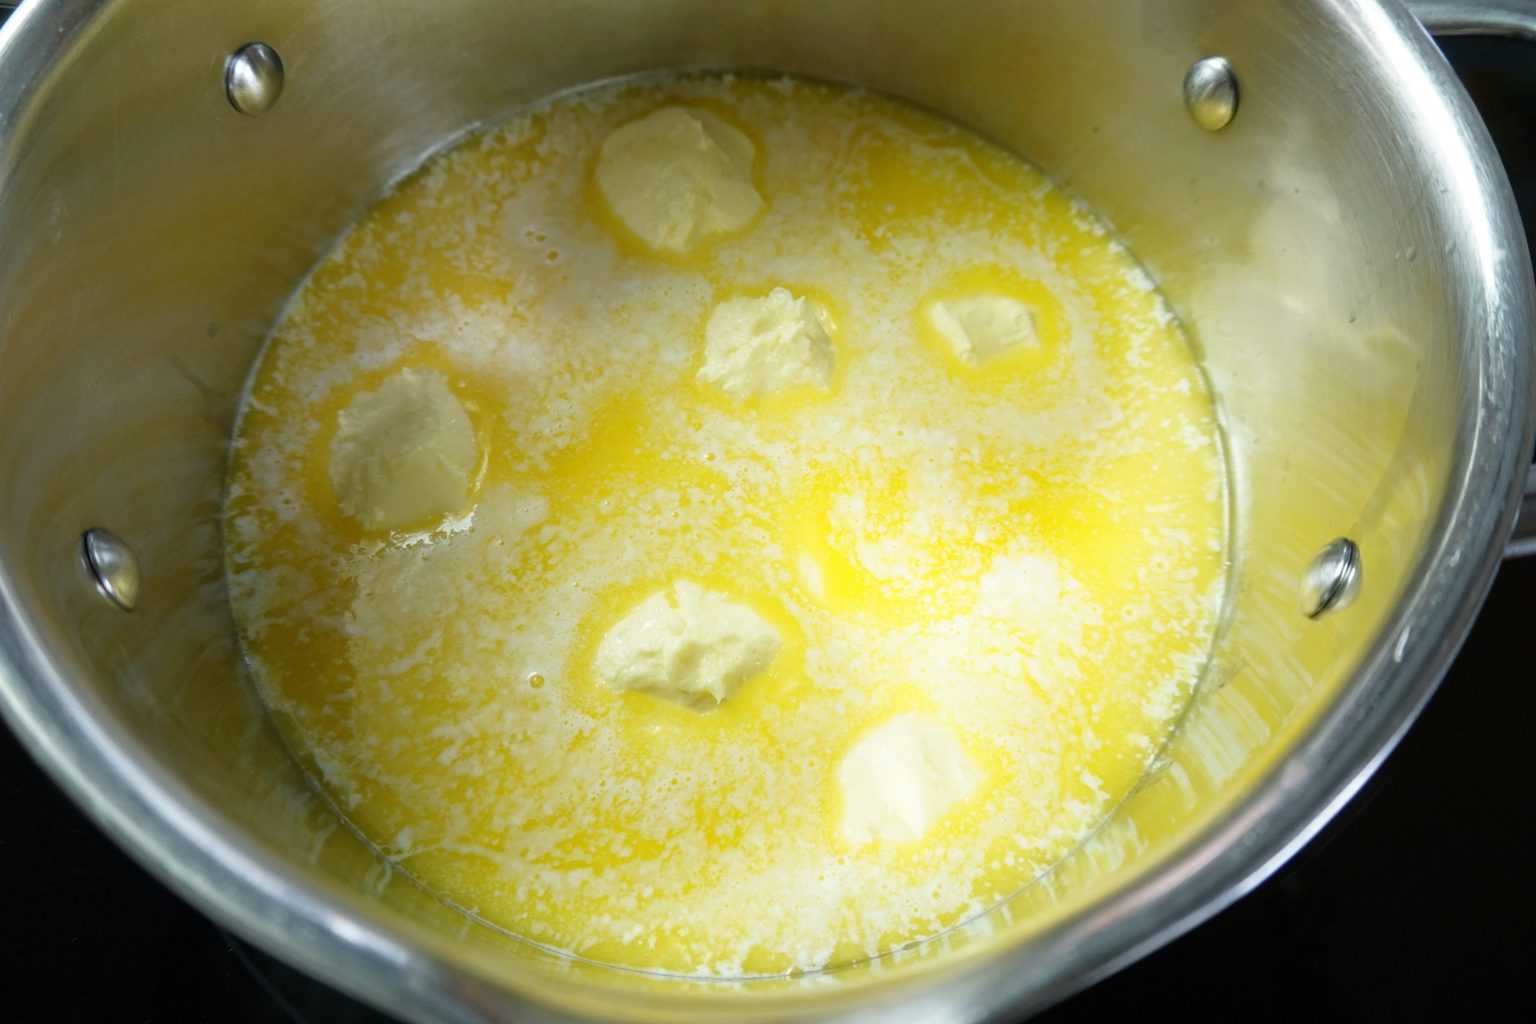 Melting butter to make ghee